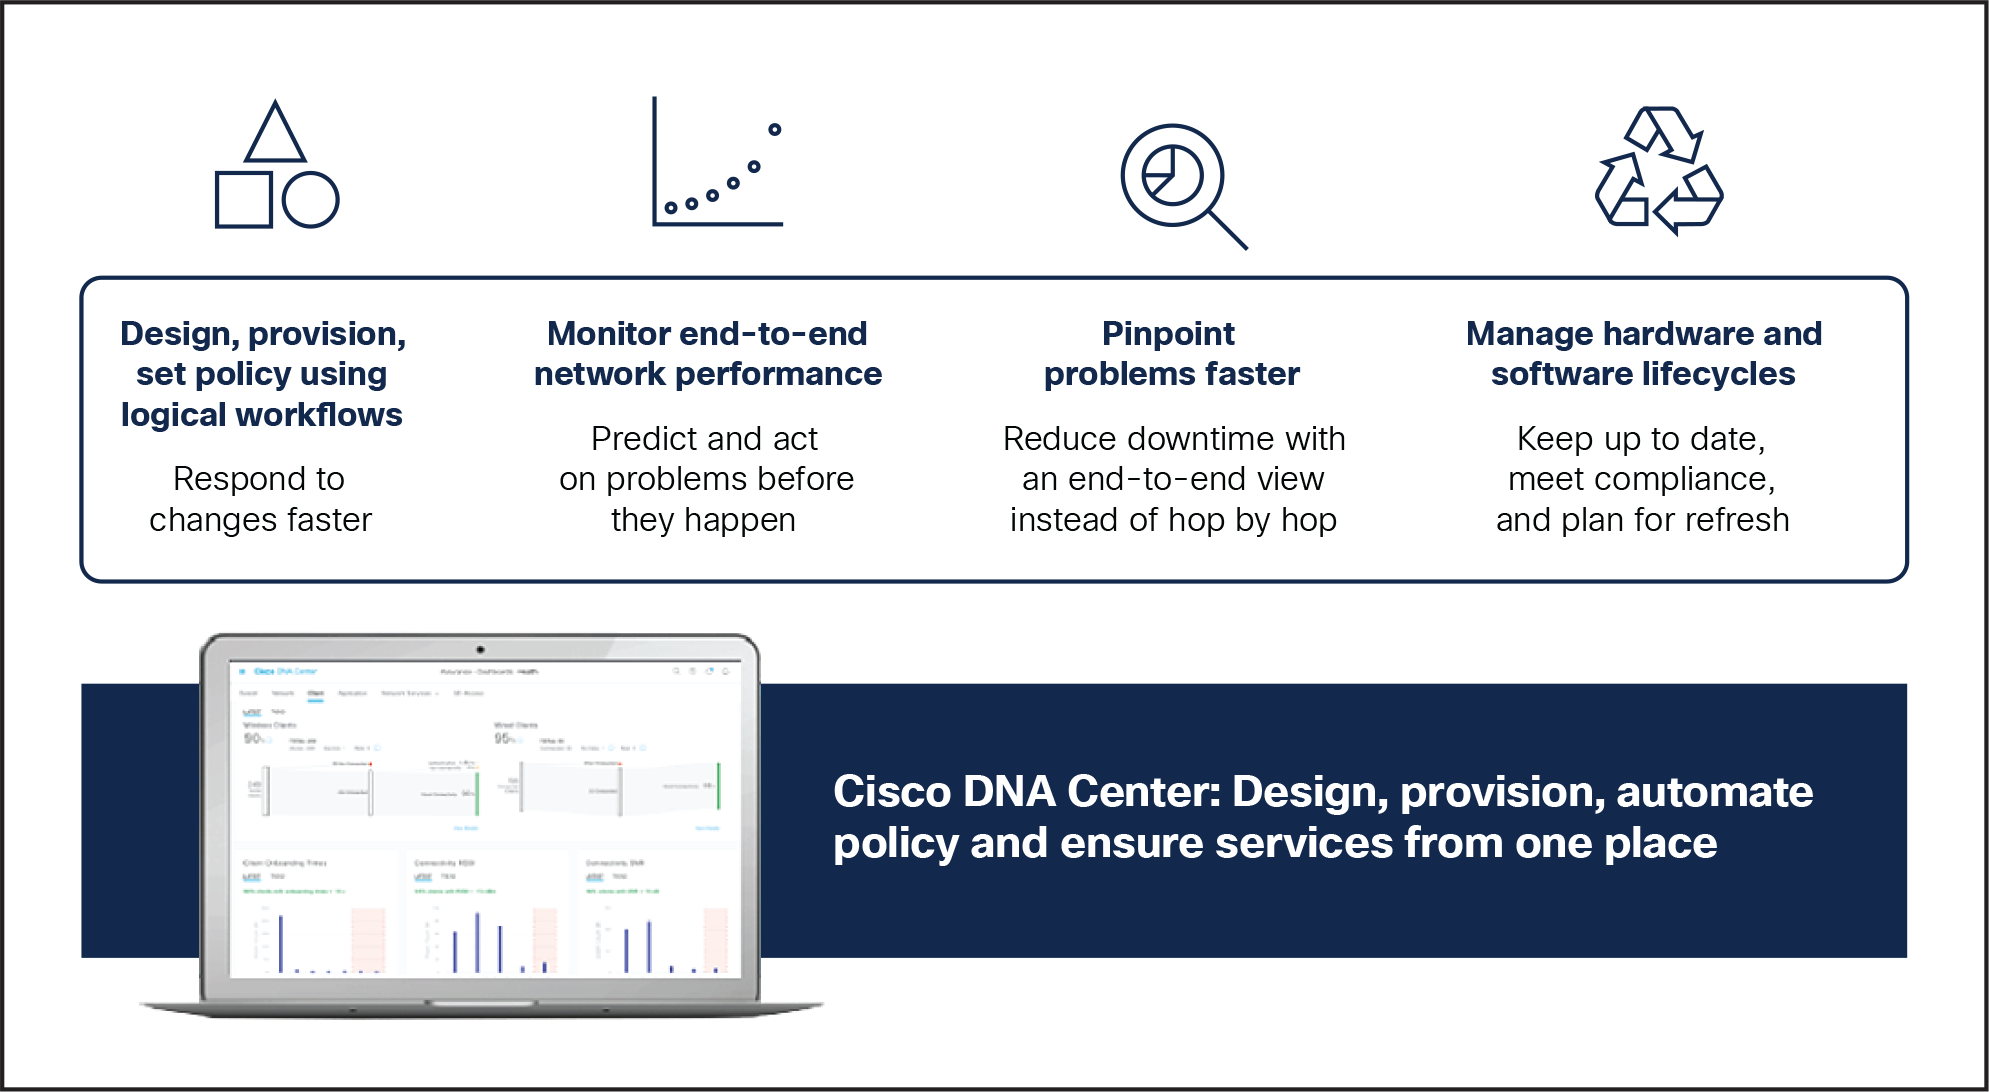 Cisco DNA Center features